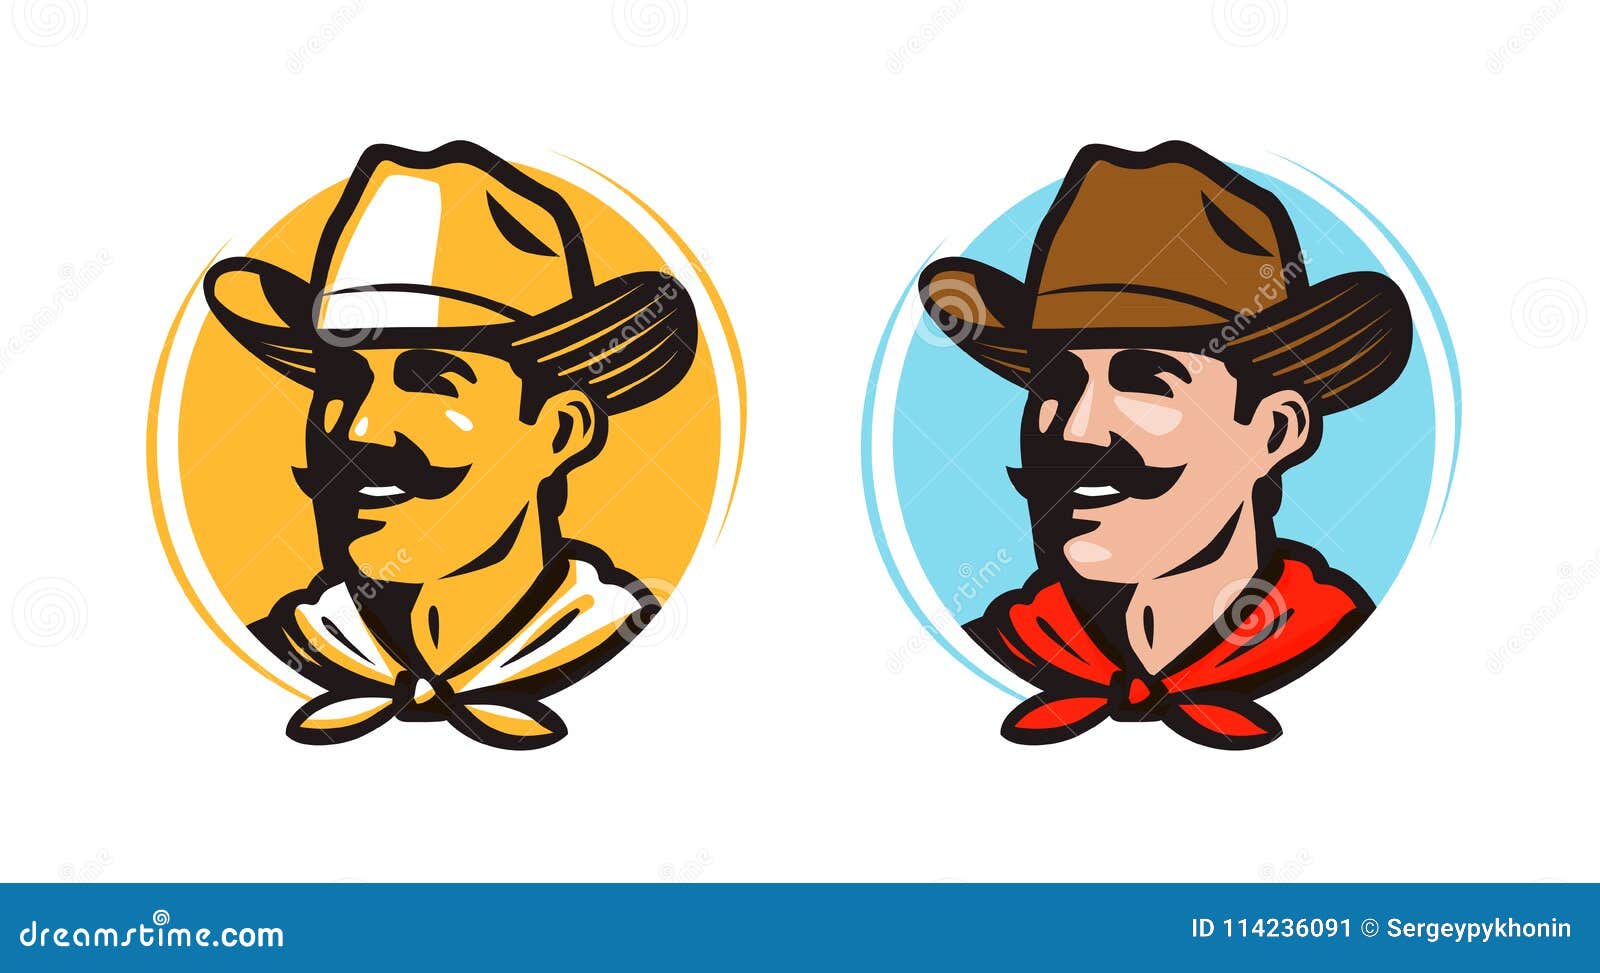 american cowboy, sheriff logo or label. farmer, grower, farm icon. cartoon  